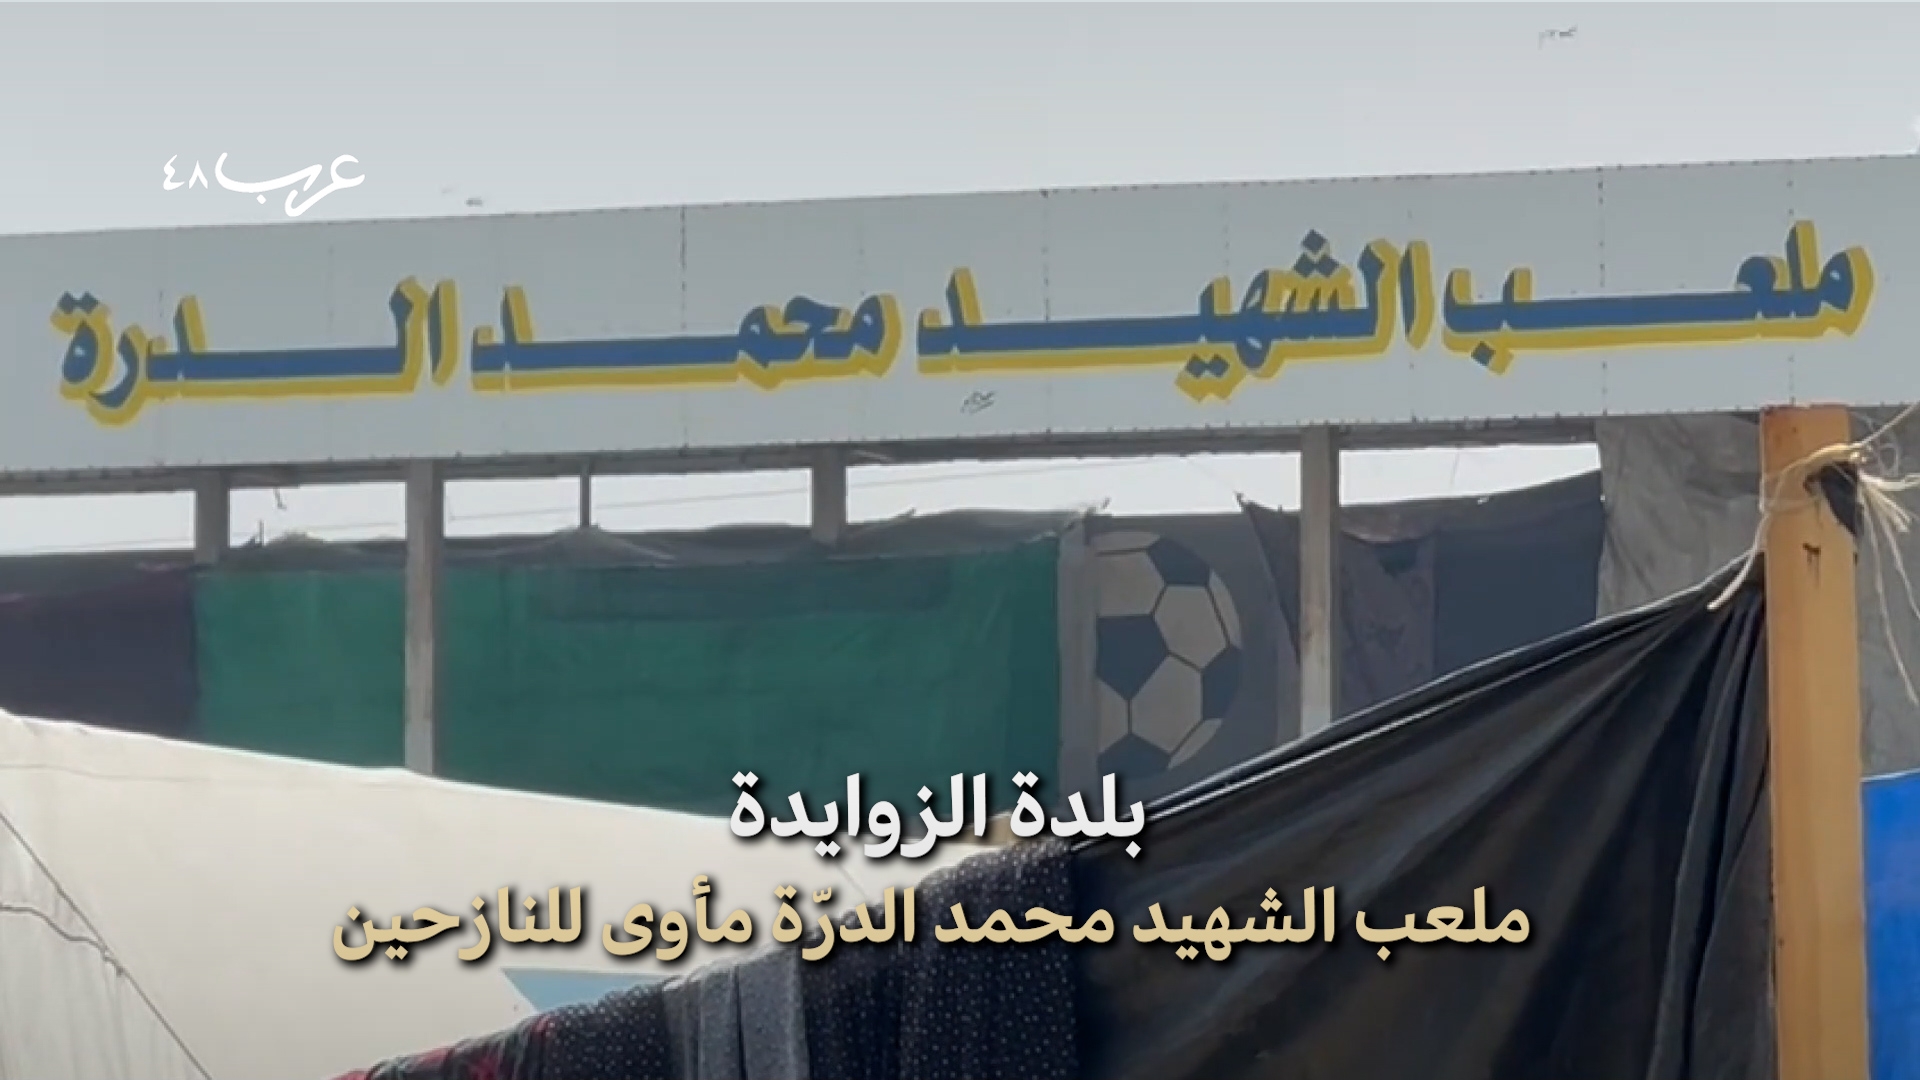 دير البلح | 10 آلاف نازح في ملعب الشهيد الدرّة